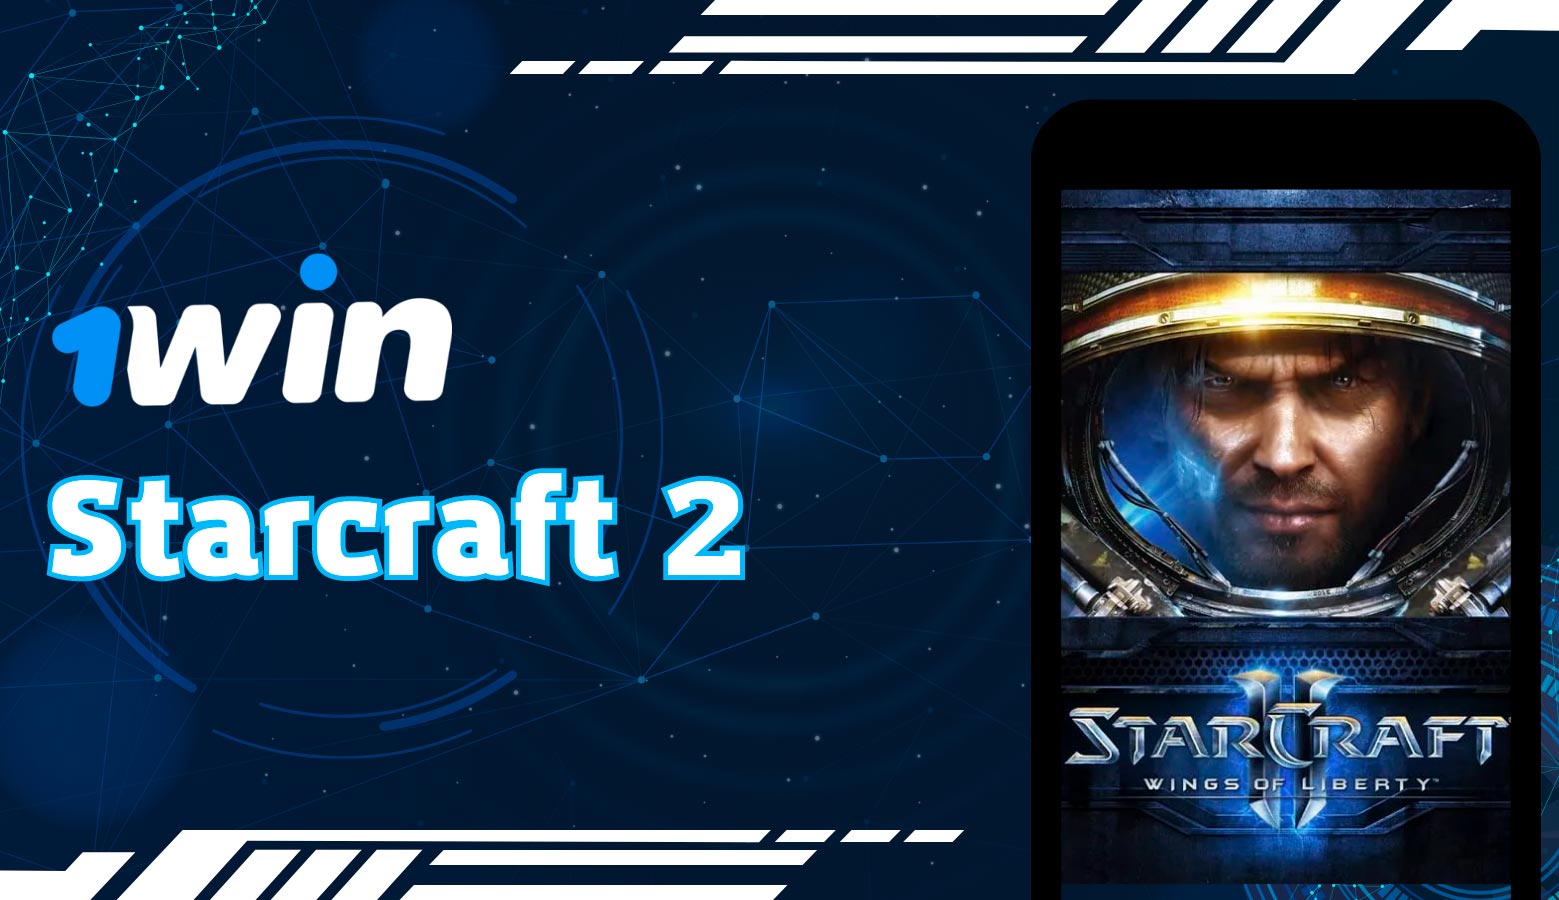 después de instalar la aplicación podrás jugar starcraft2